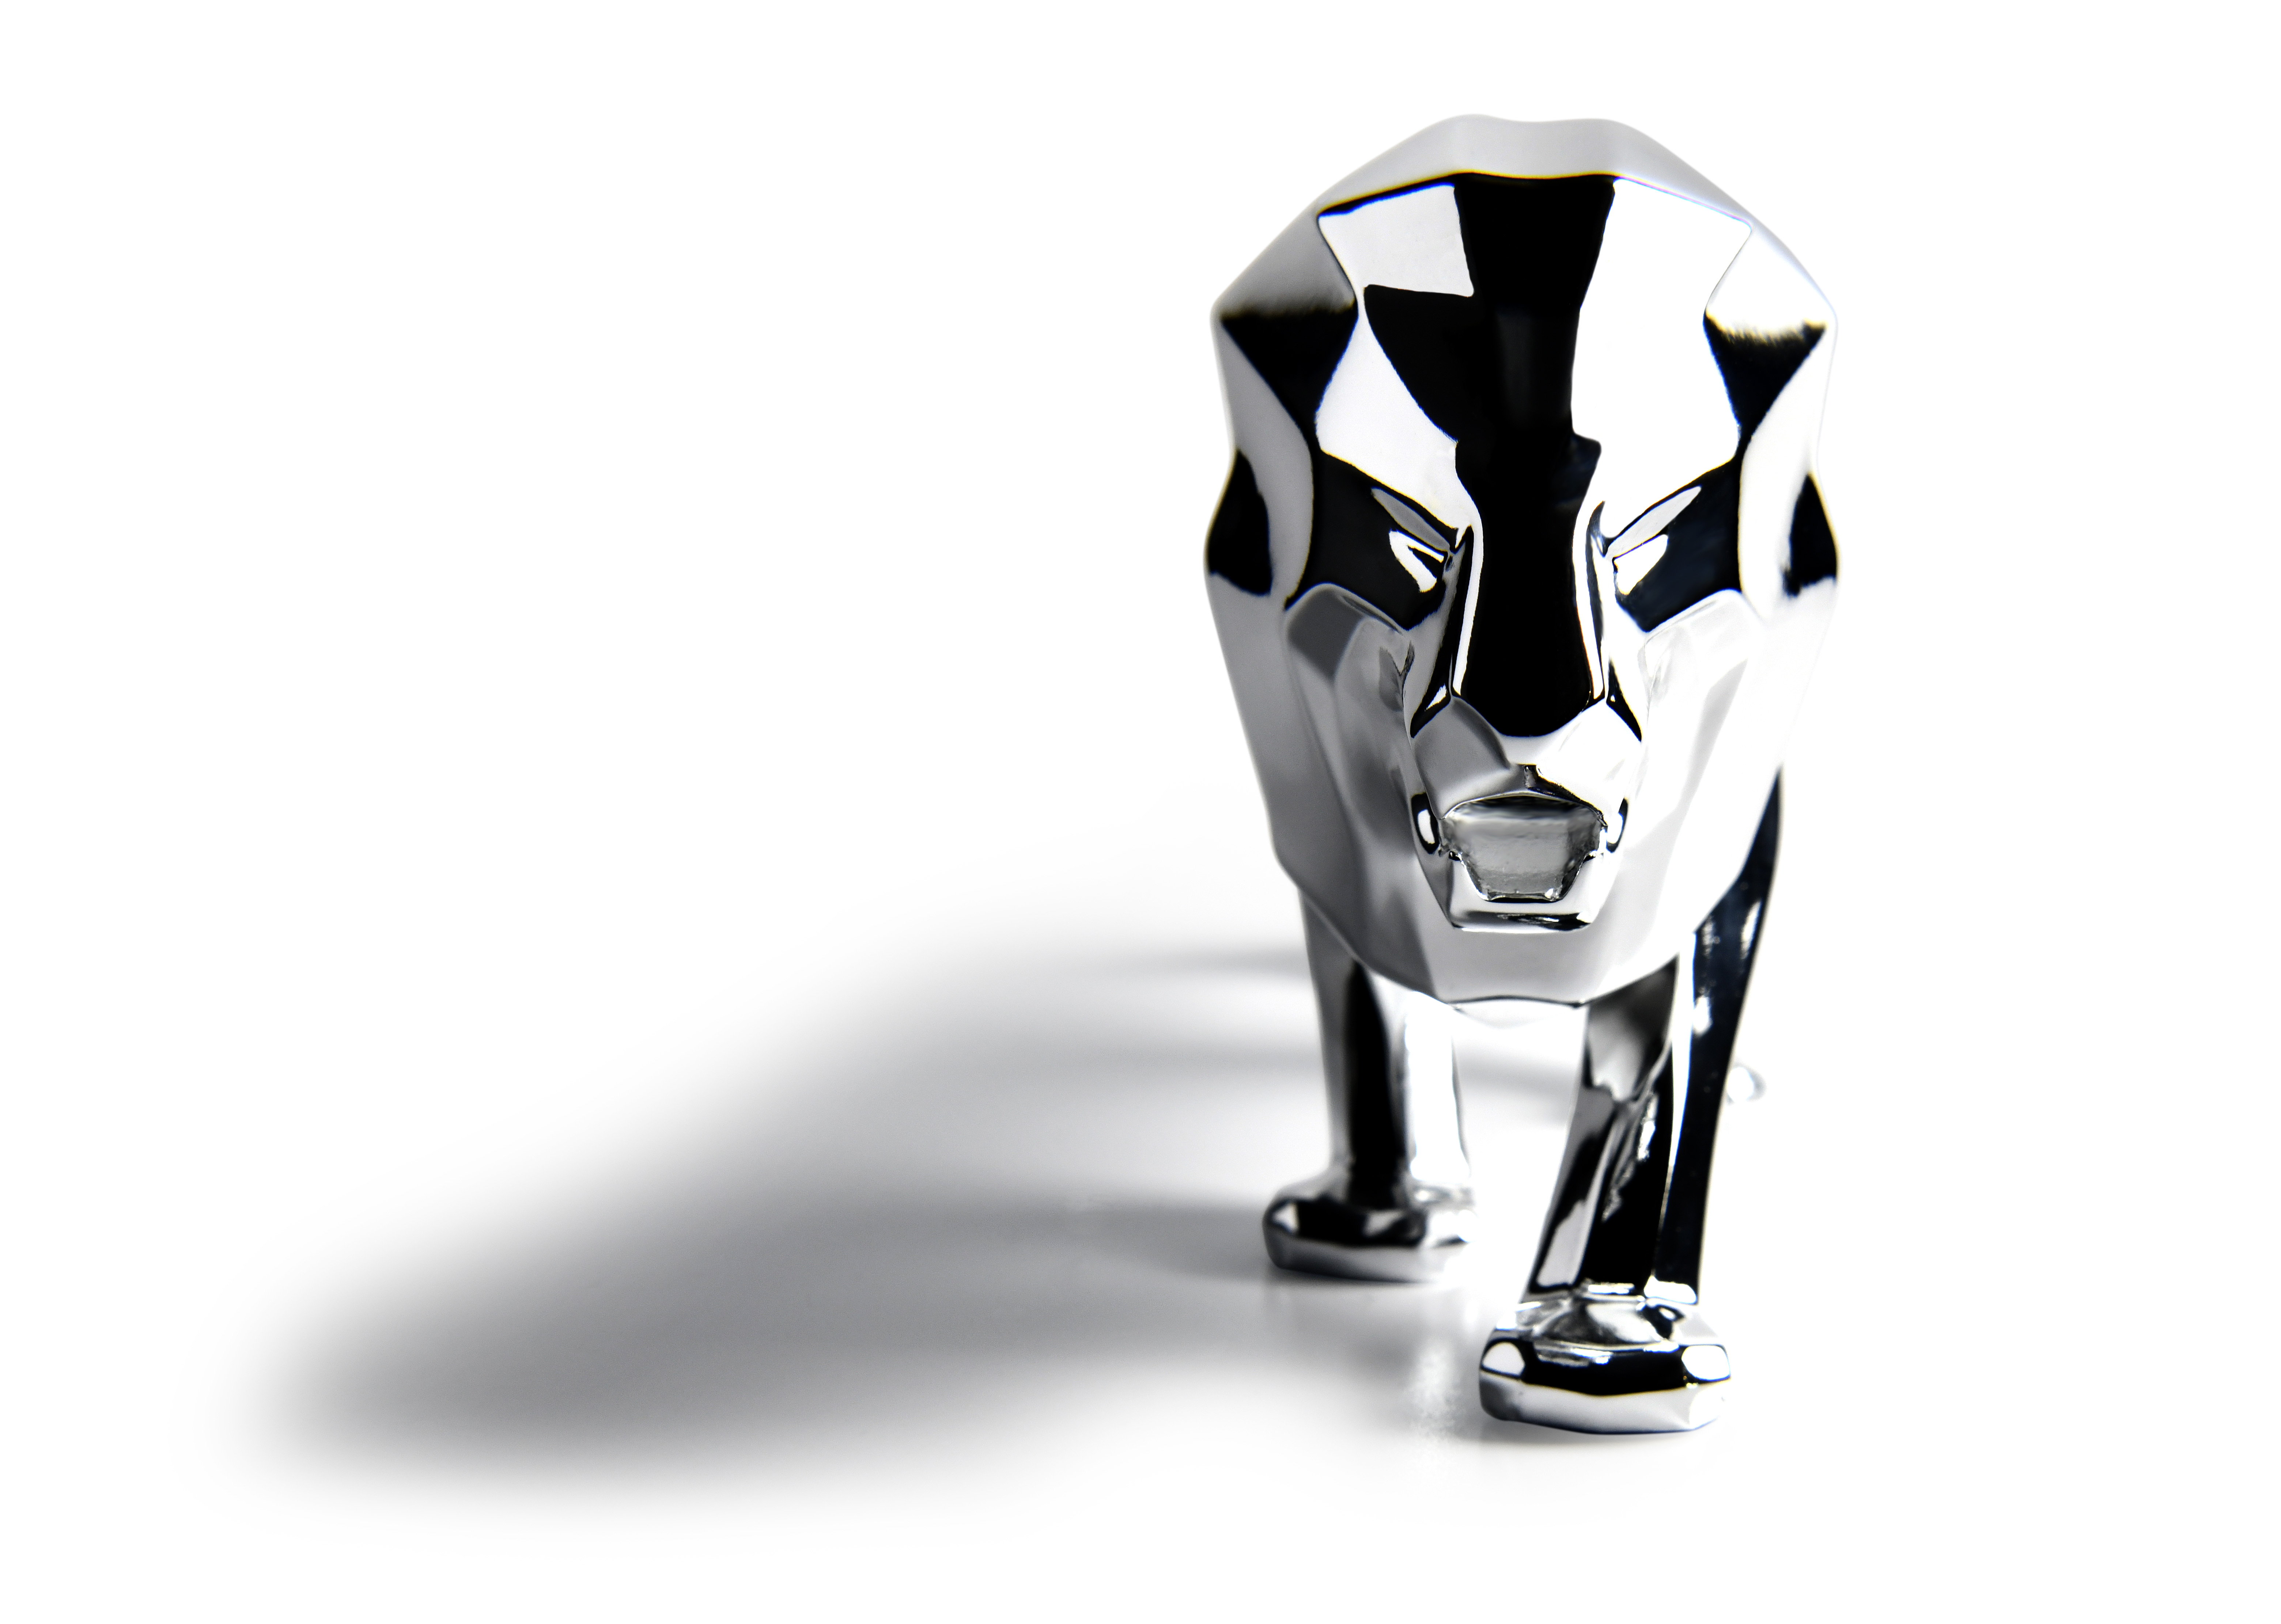 Peugeot_LionAmbassador_DesktopSculpture_002_0.jpg